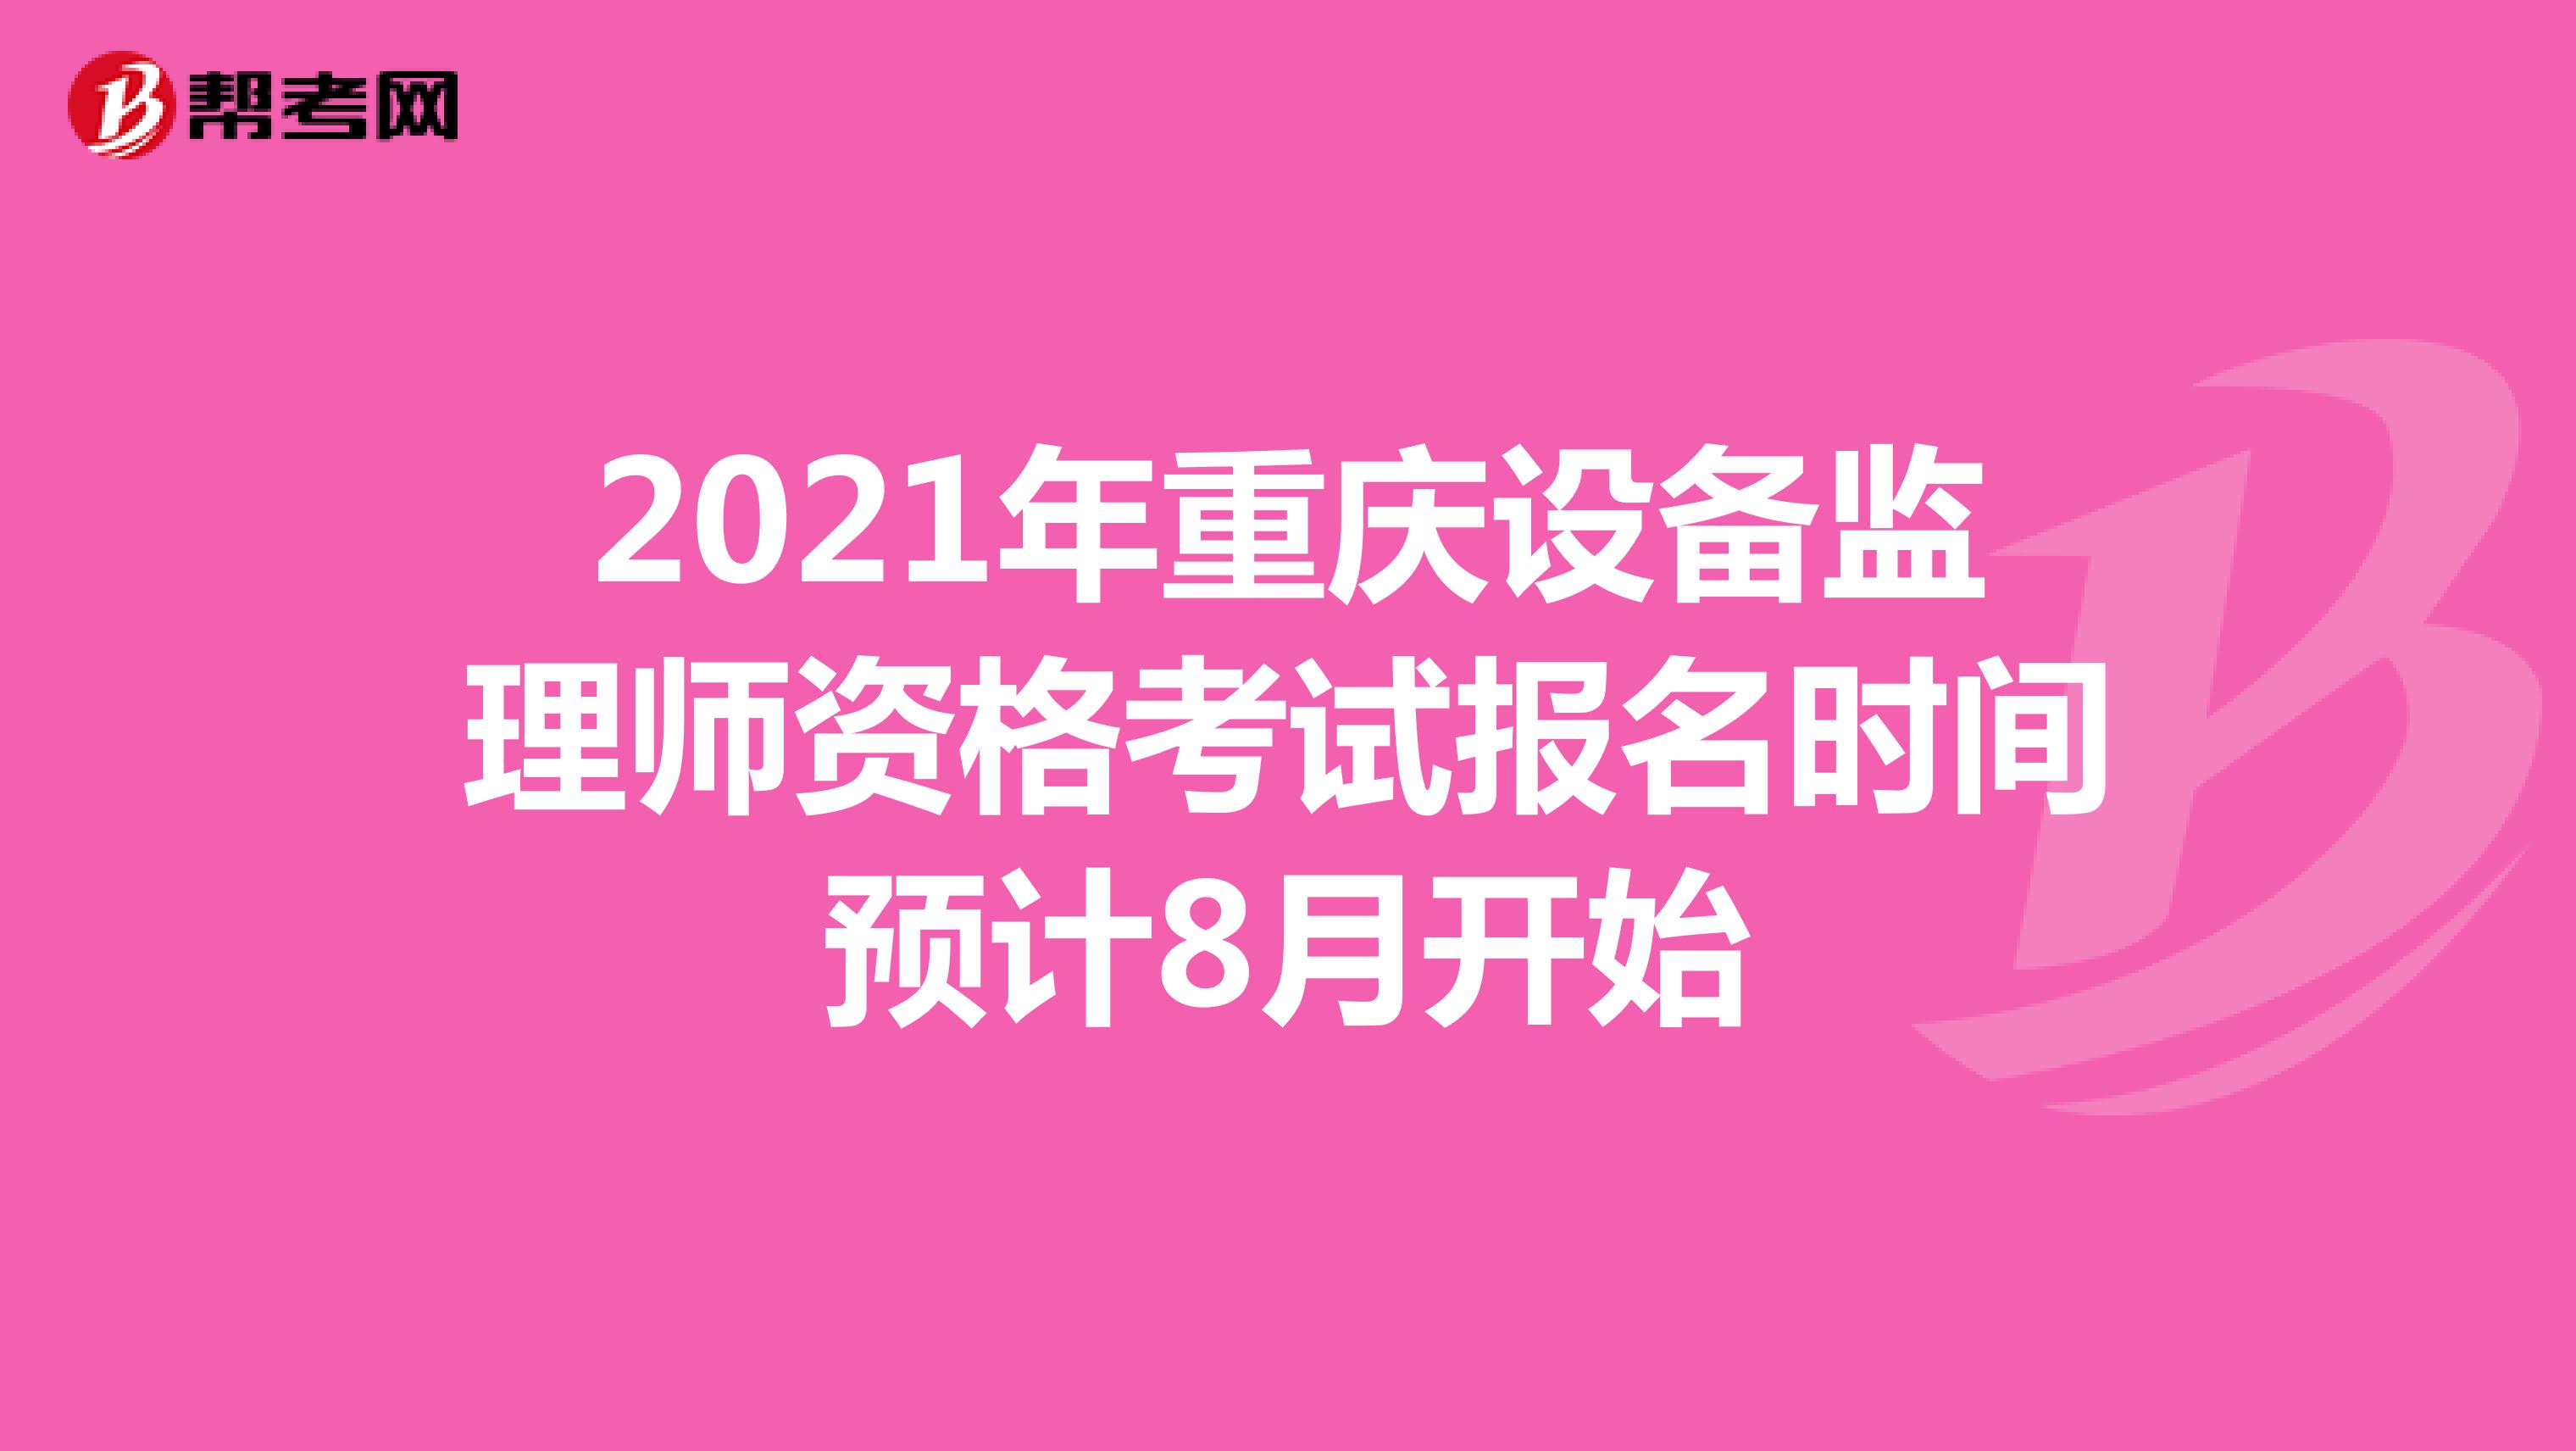 2021年重庆设备监理师资格考试报名时间预计8月开始